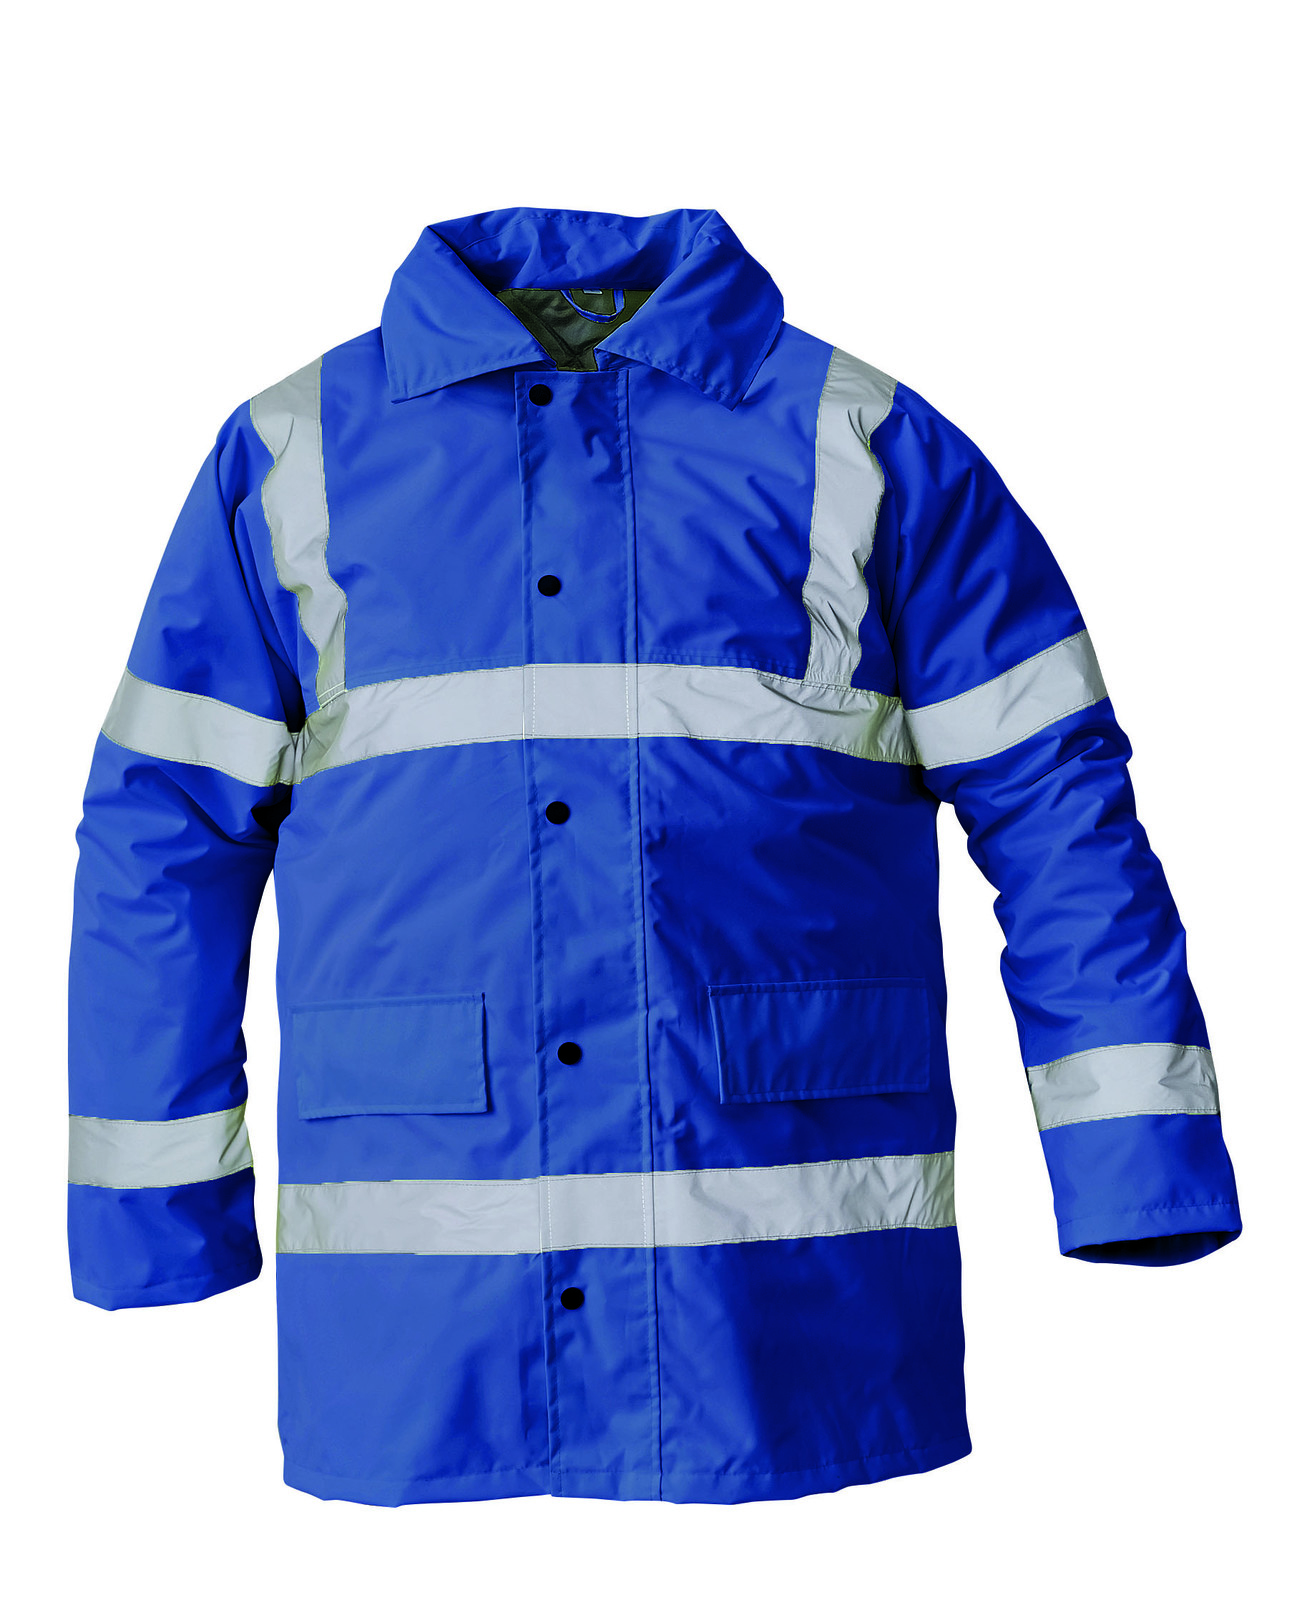 Ľahká zateplená reflexná bunda Sefton - veľkosť: S, farba: royal blue